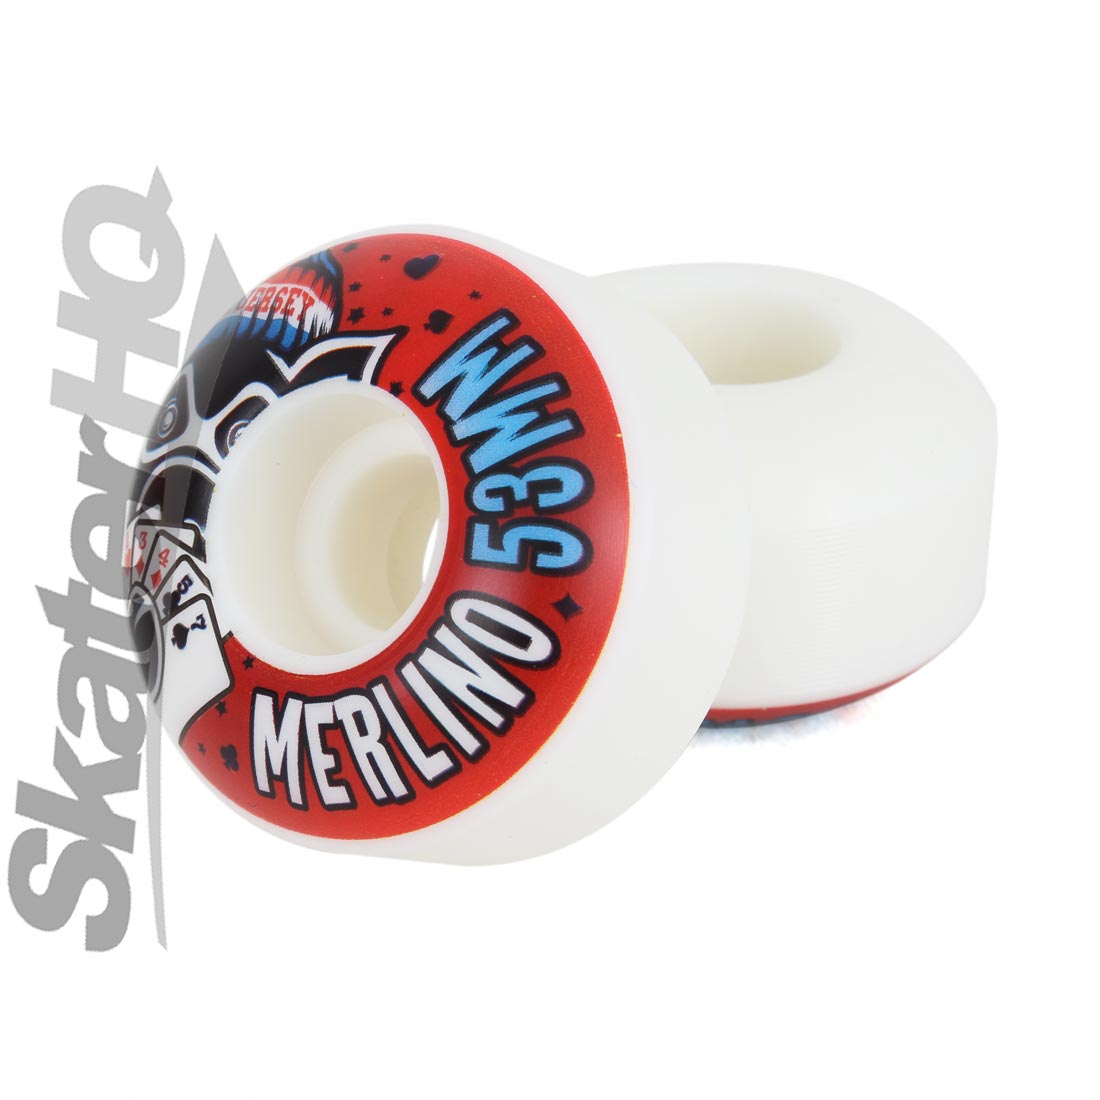 PIG Merlino Vice 53mm Skateboard Wheels